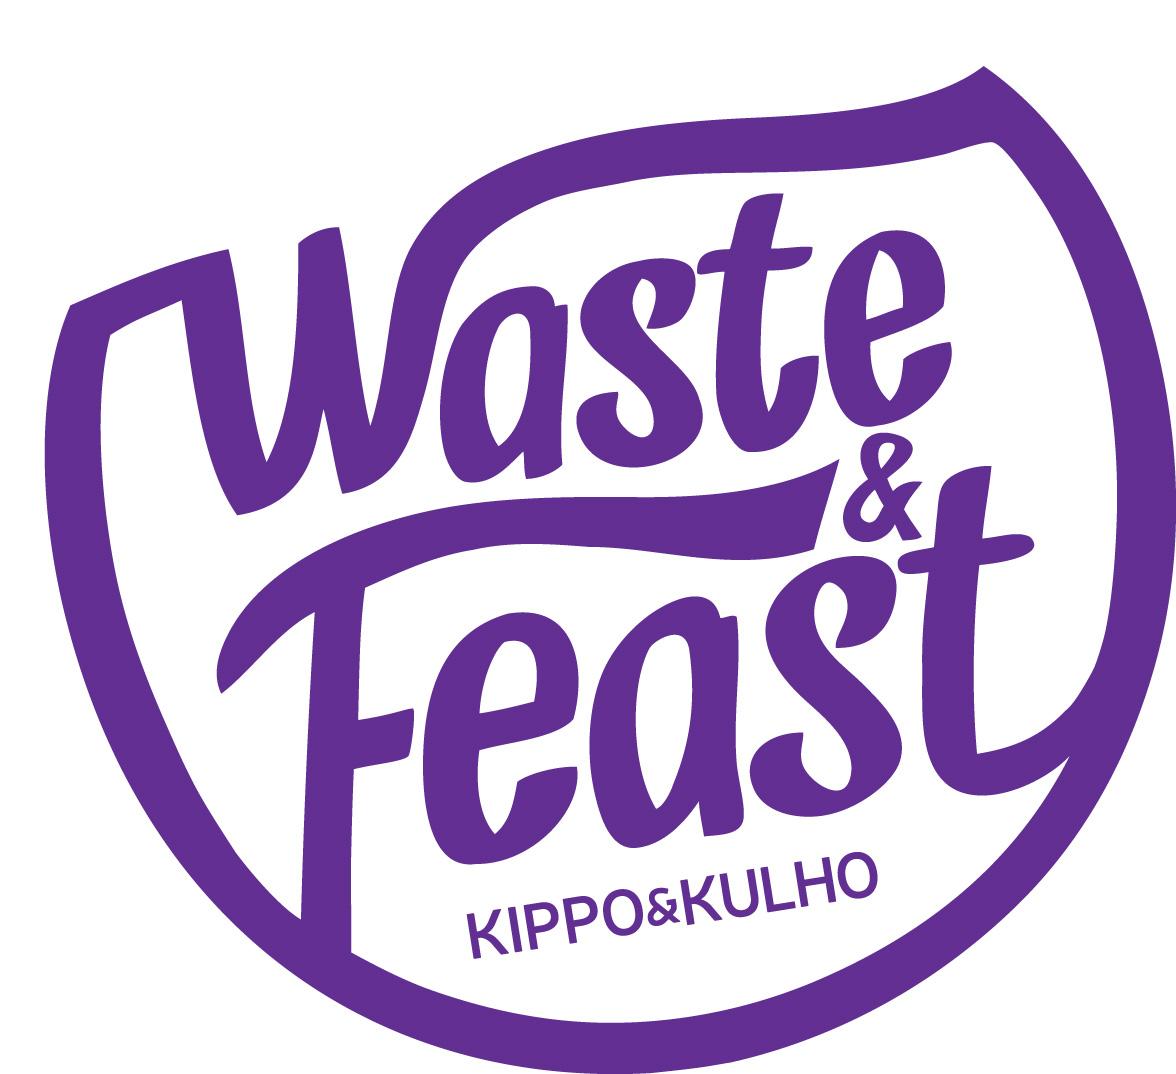 Waste & Feast Café Töölö logo